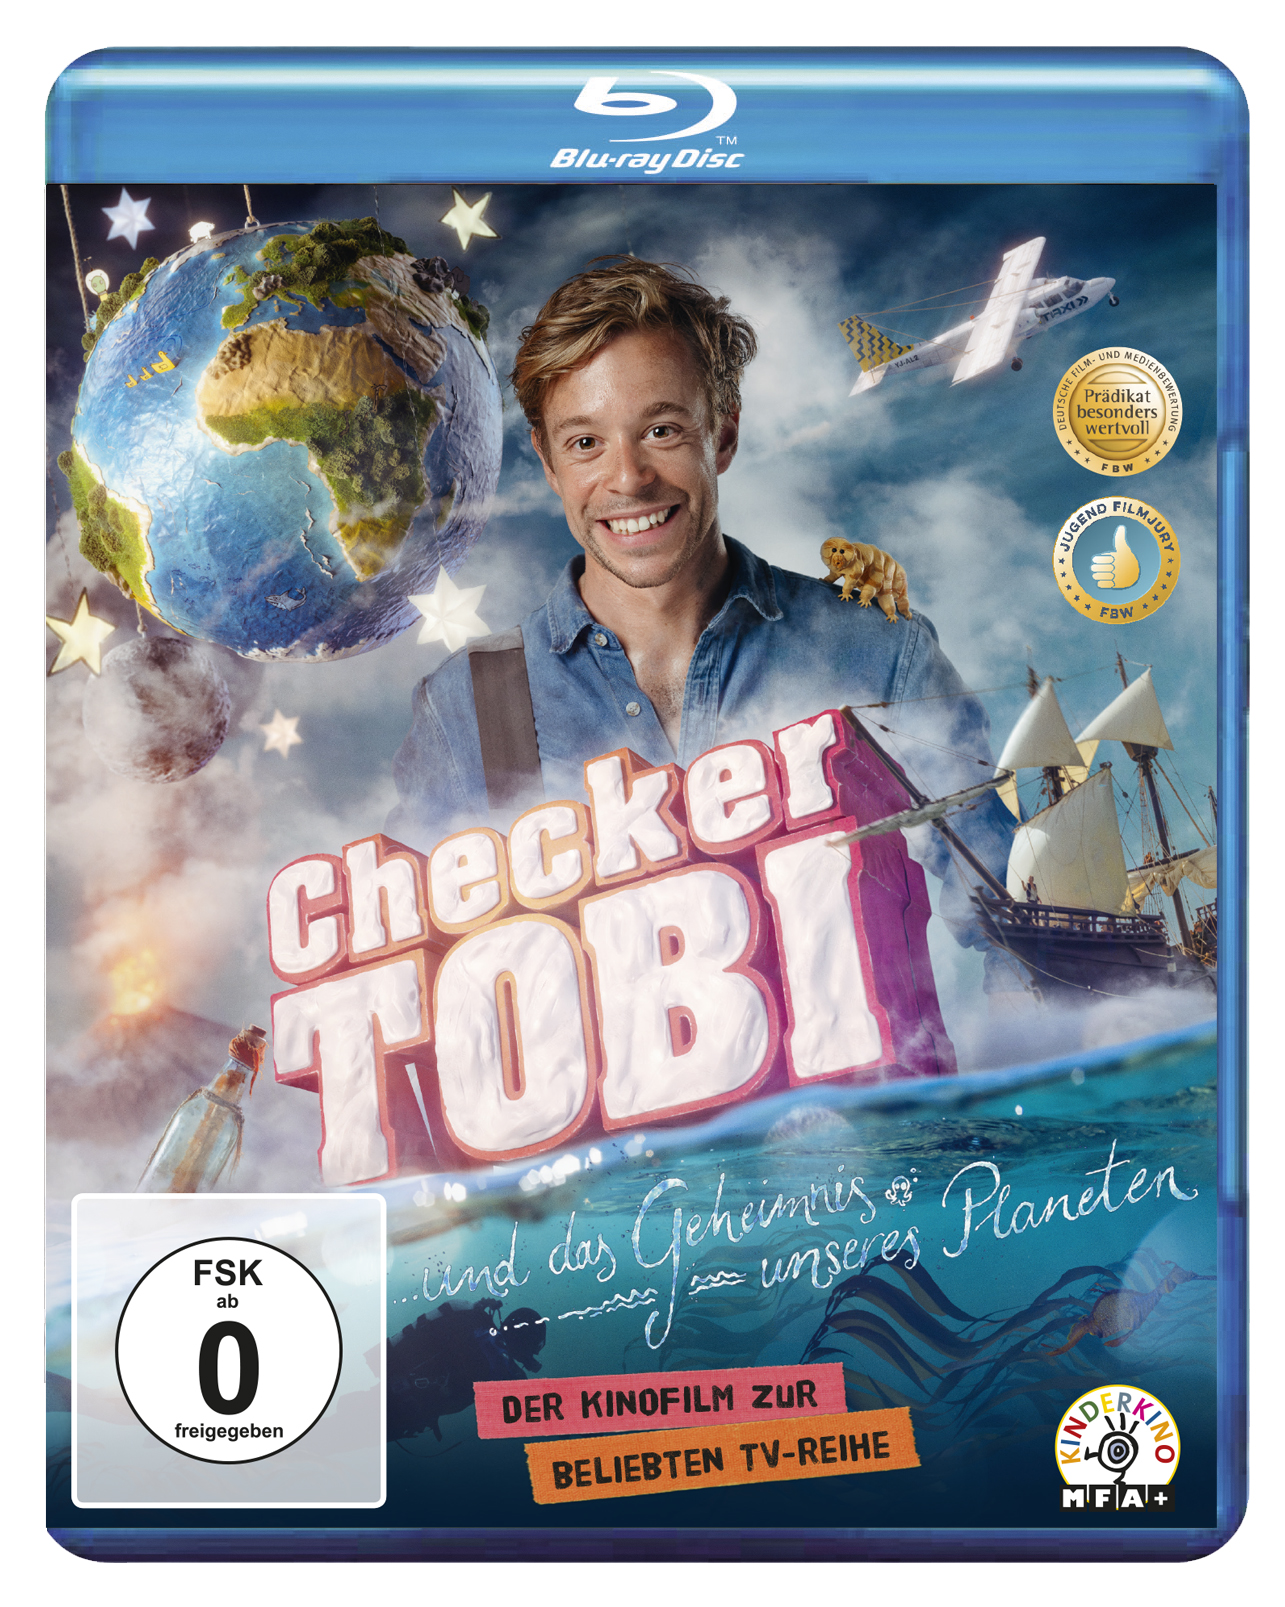 und das Geheimnis Blu-ray Checker Tobi unseres Planeten